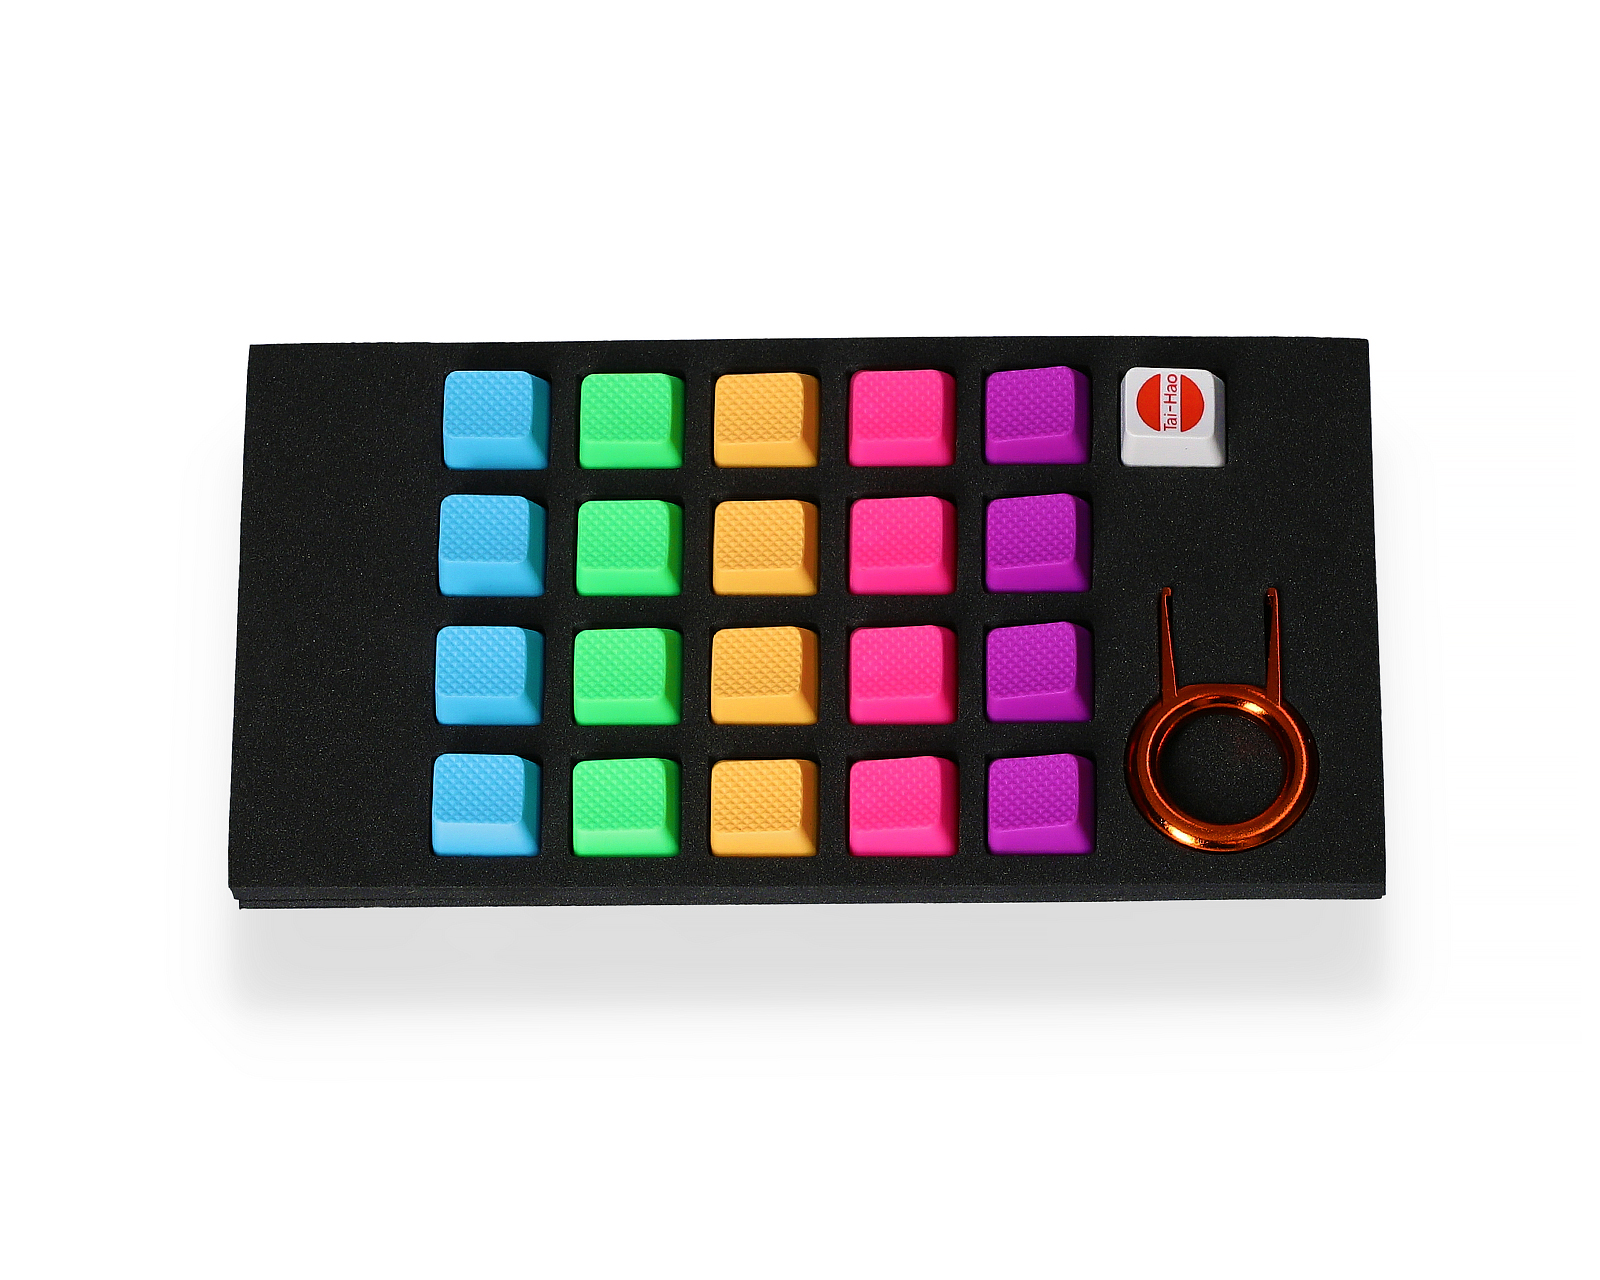 Buy Tai Hao Key Blank Rubber Keycap Set Rainbow At Maxgaming Com